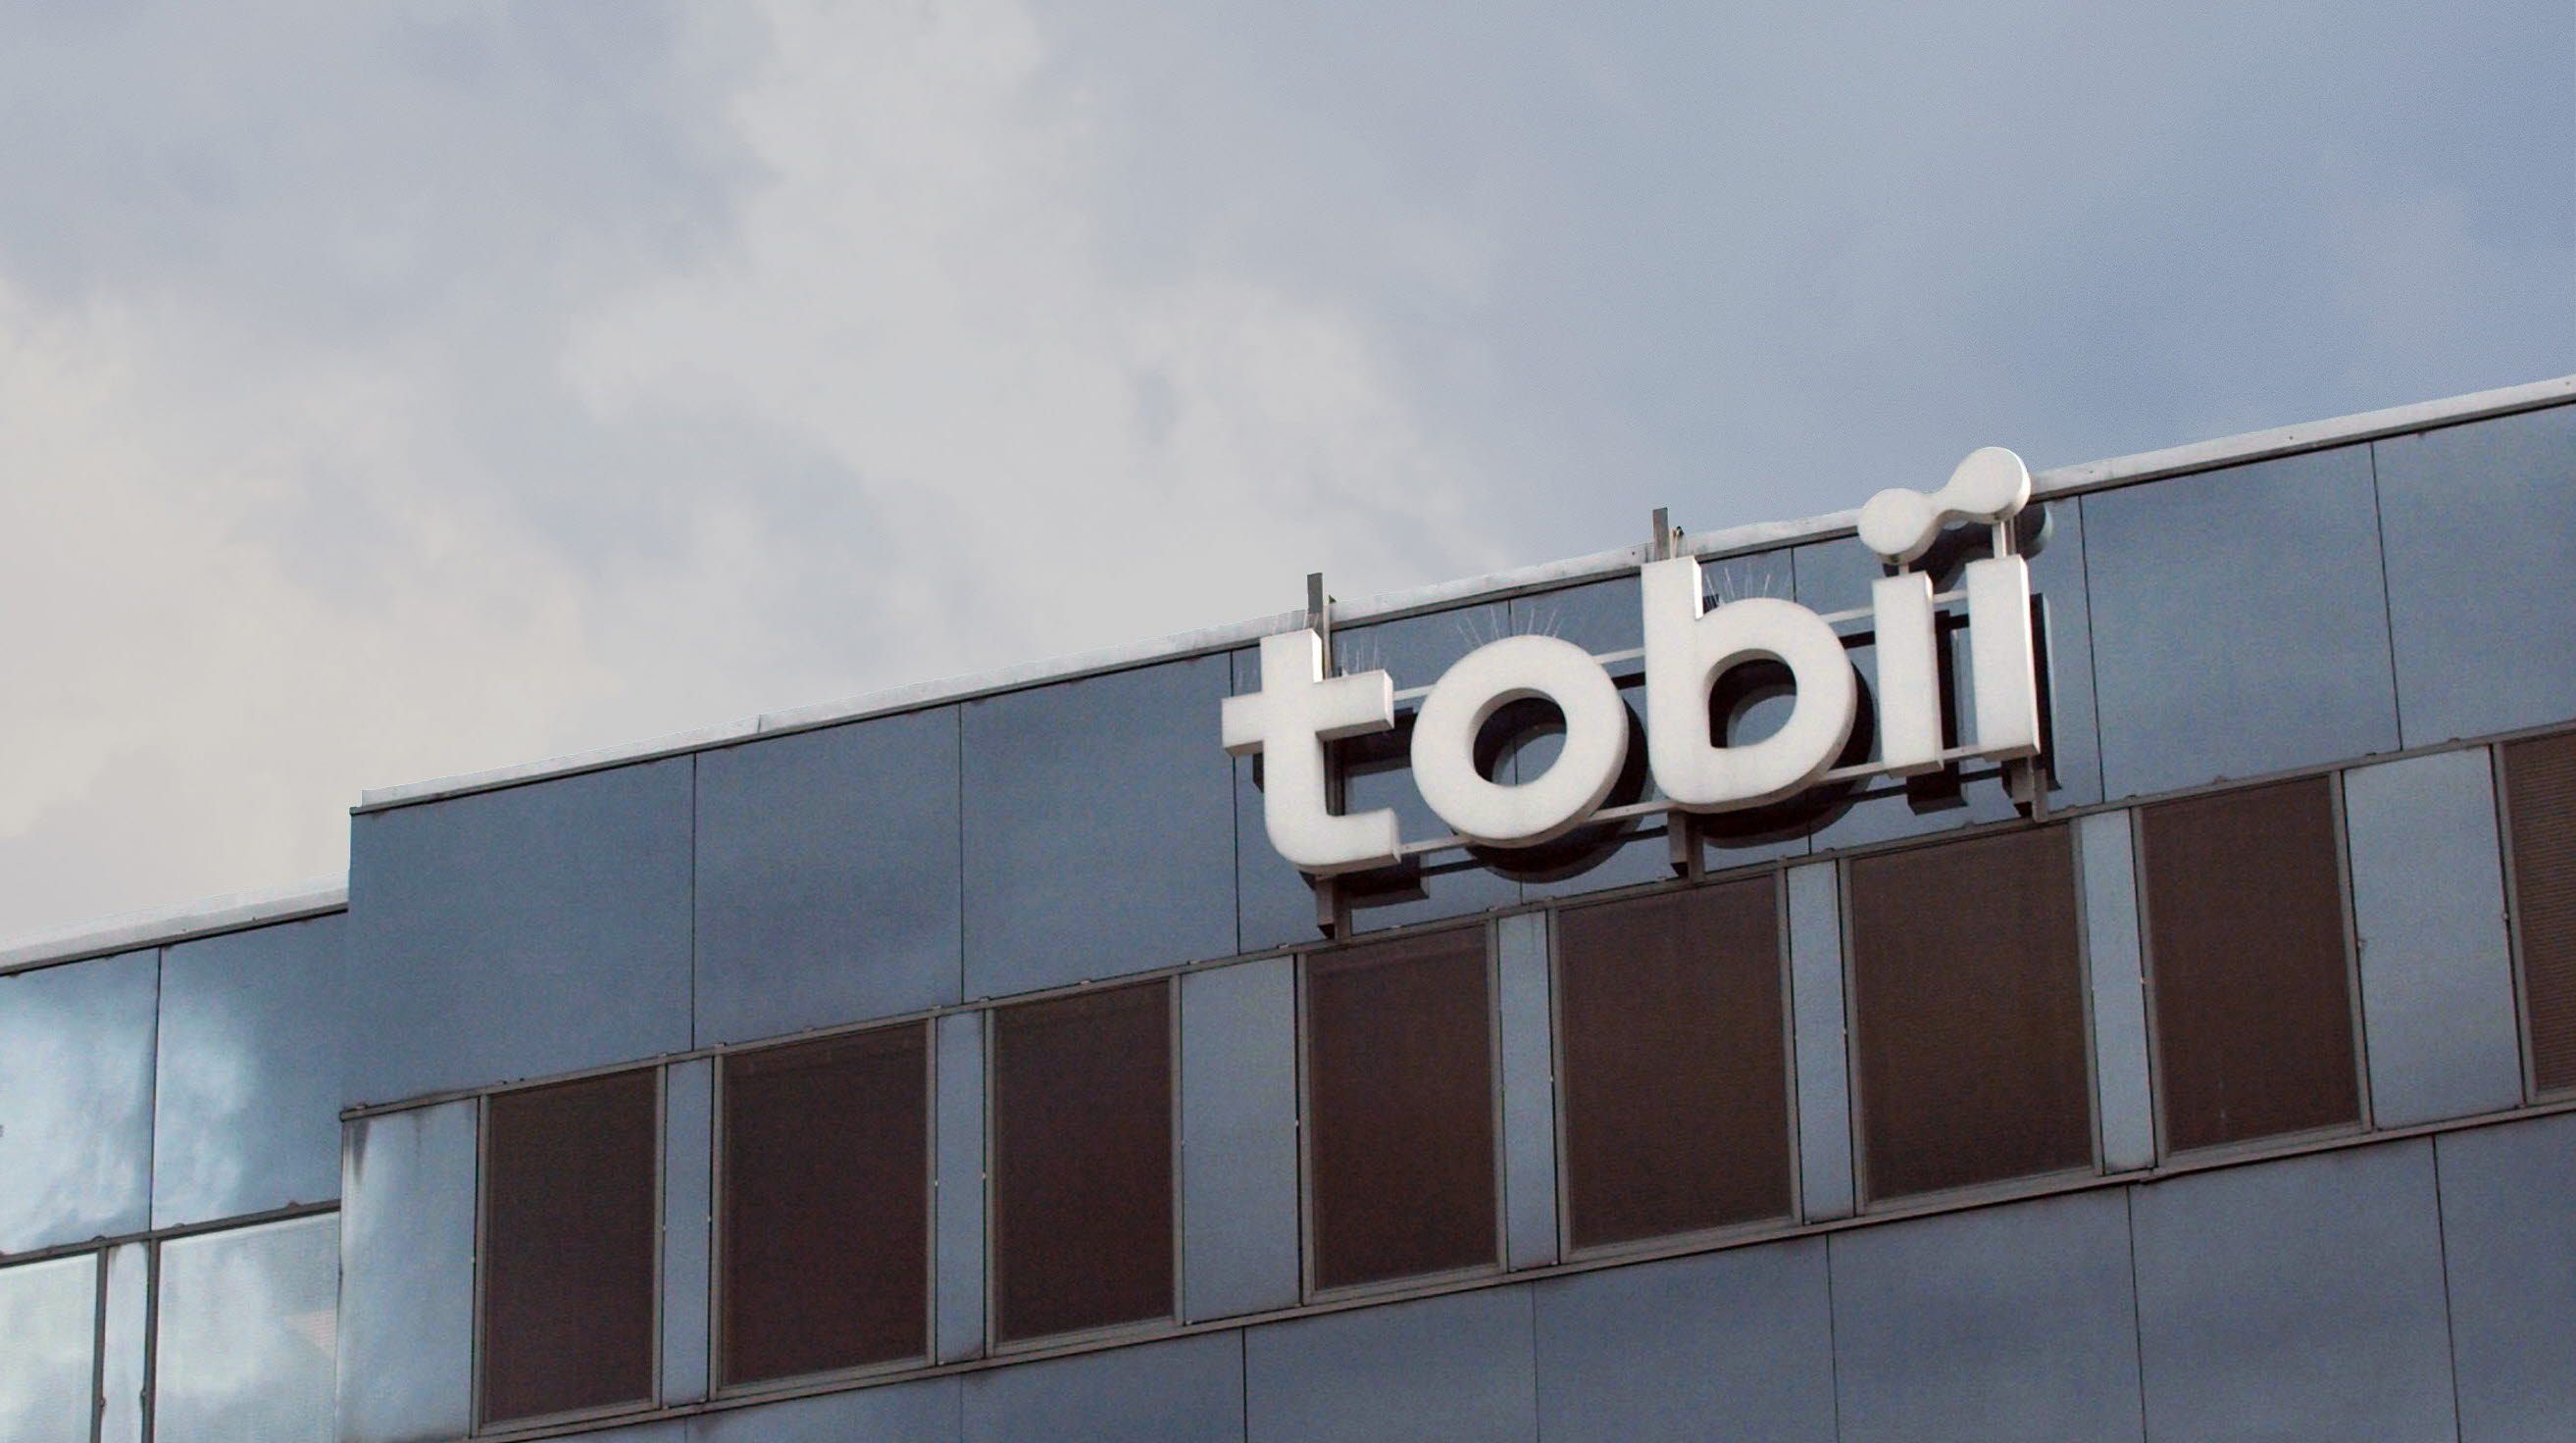 Tobii office - Stockholm